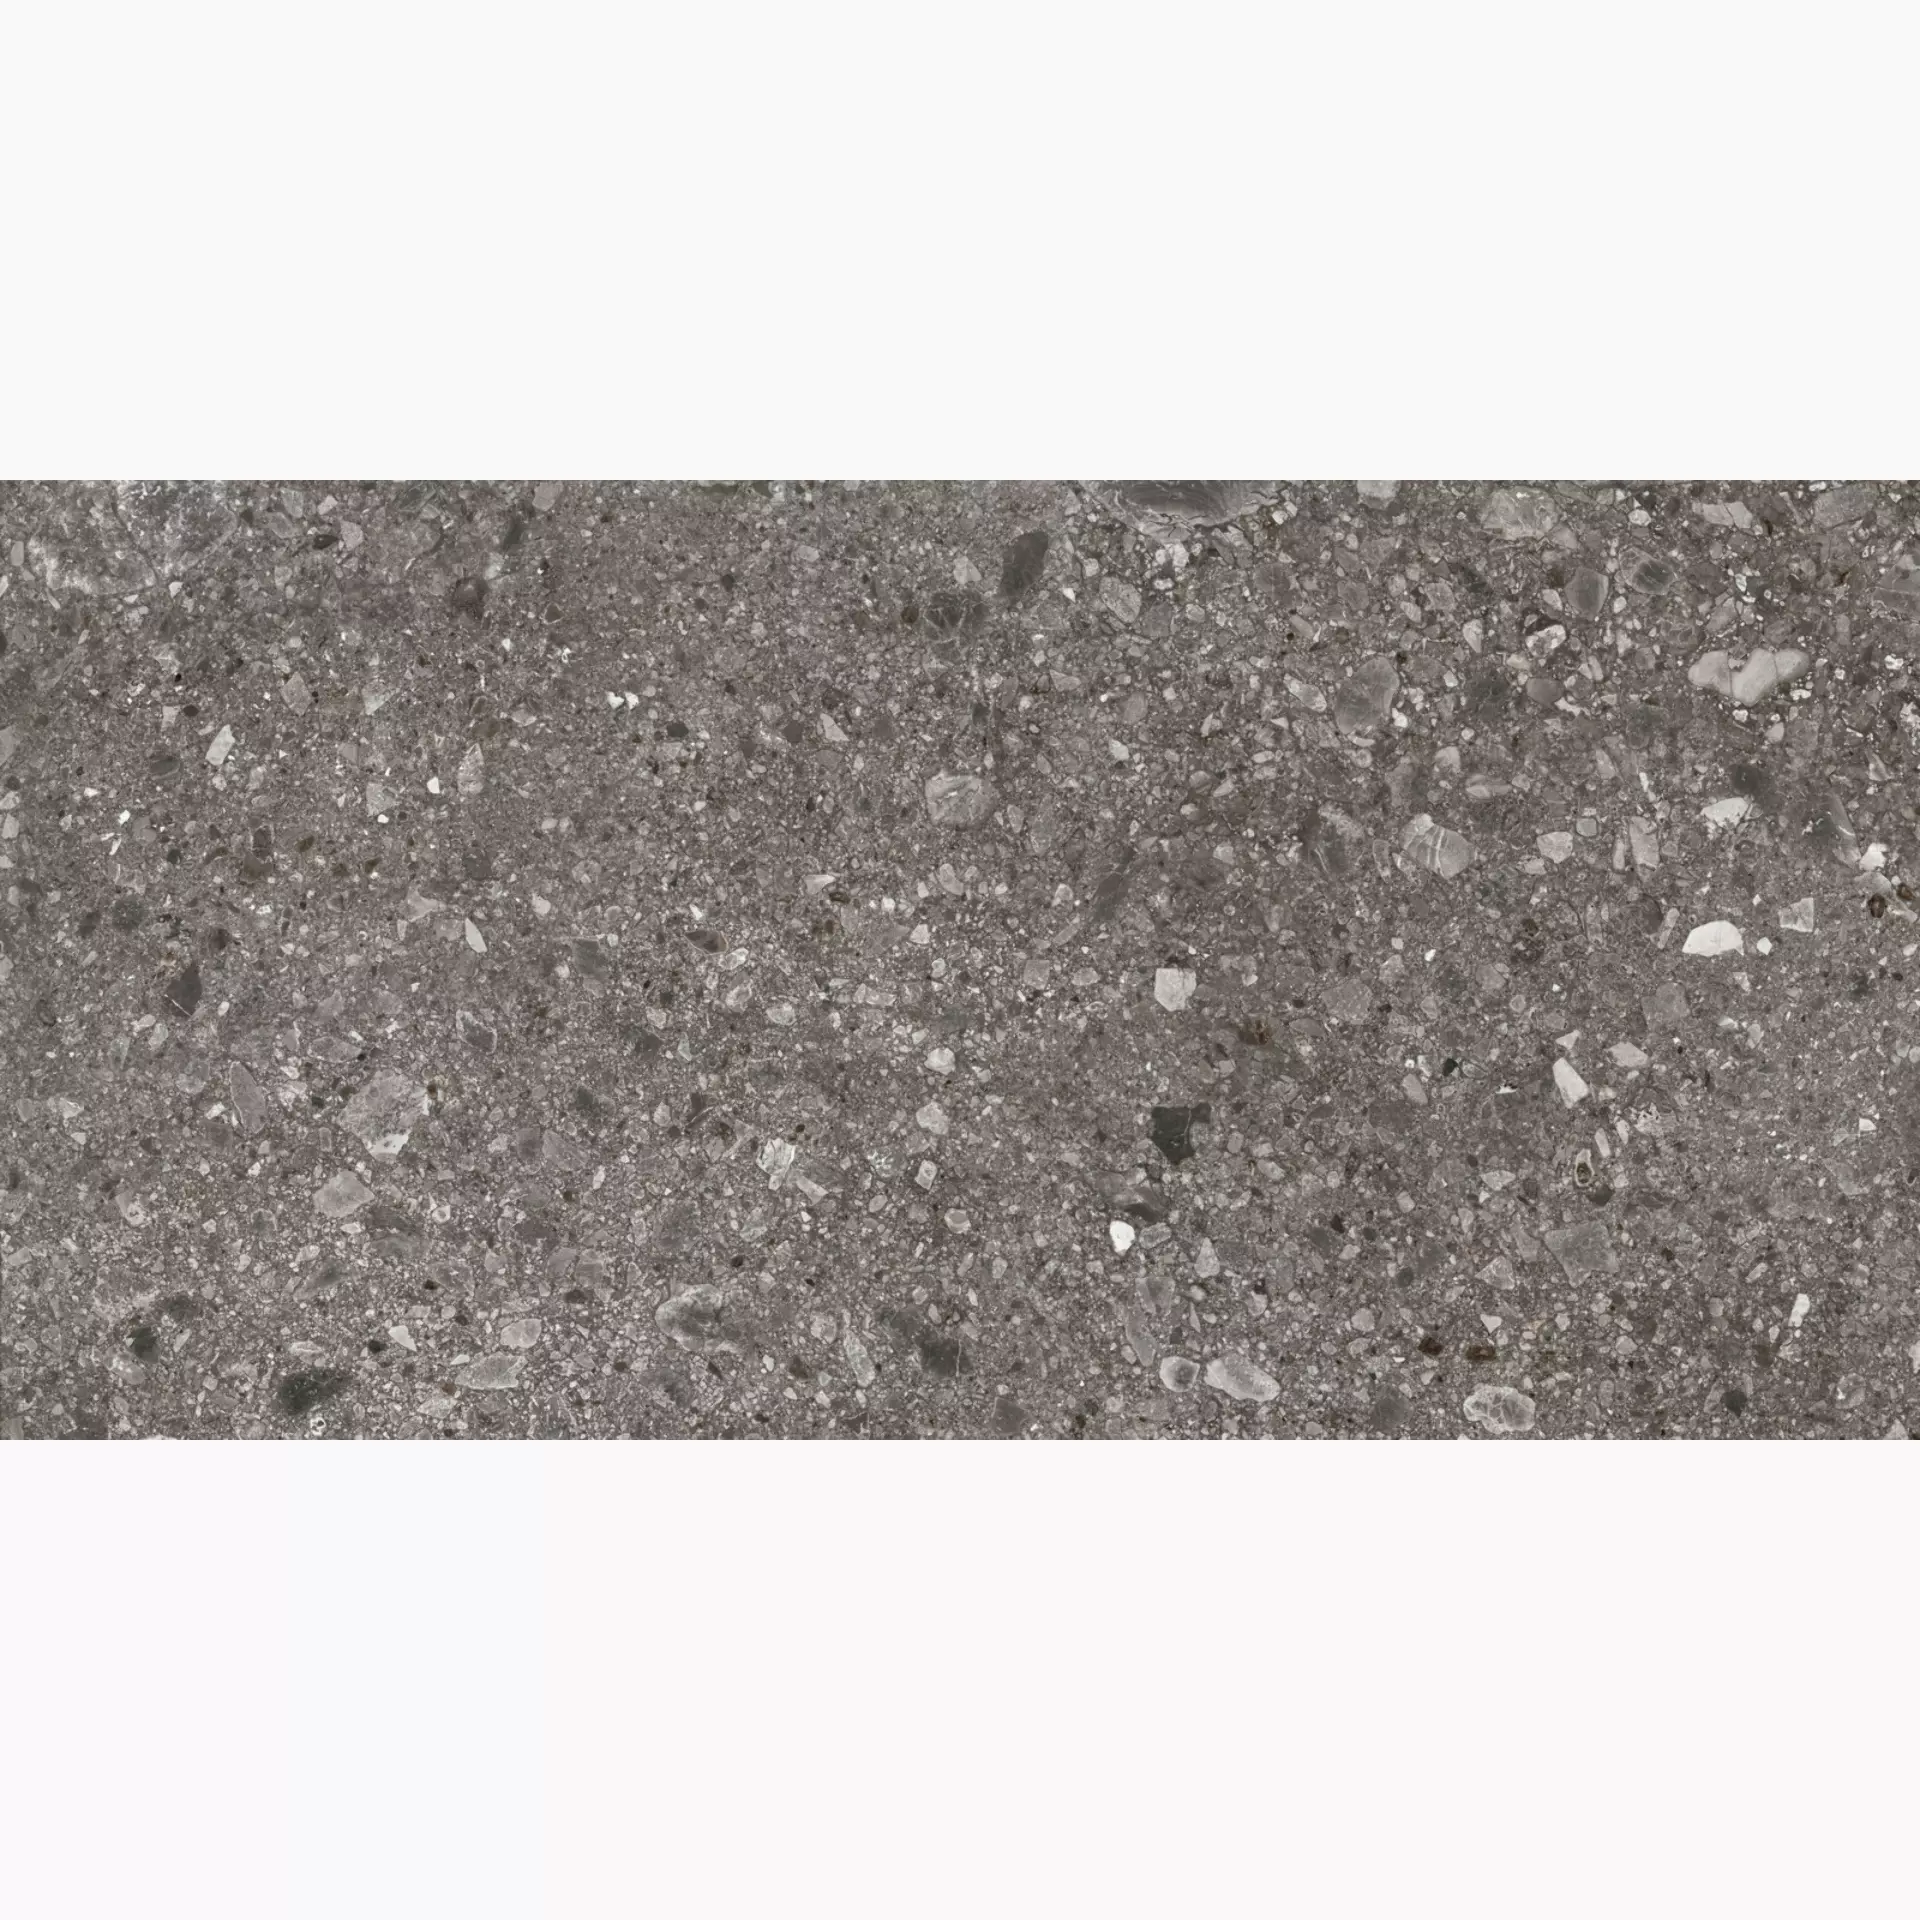 Marazzi Mystone Ceppo Di Gre Antracite Naturale – Matt MQVU 75x150cm rectified 9,5mm